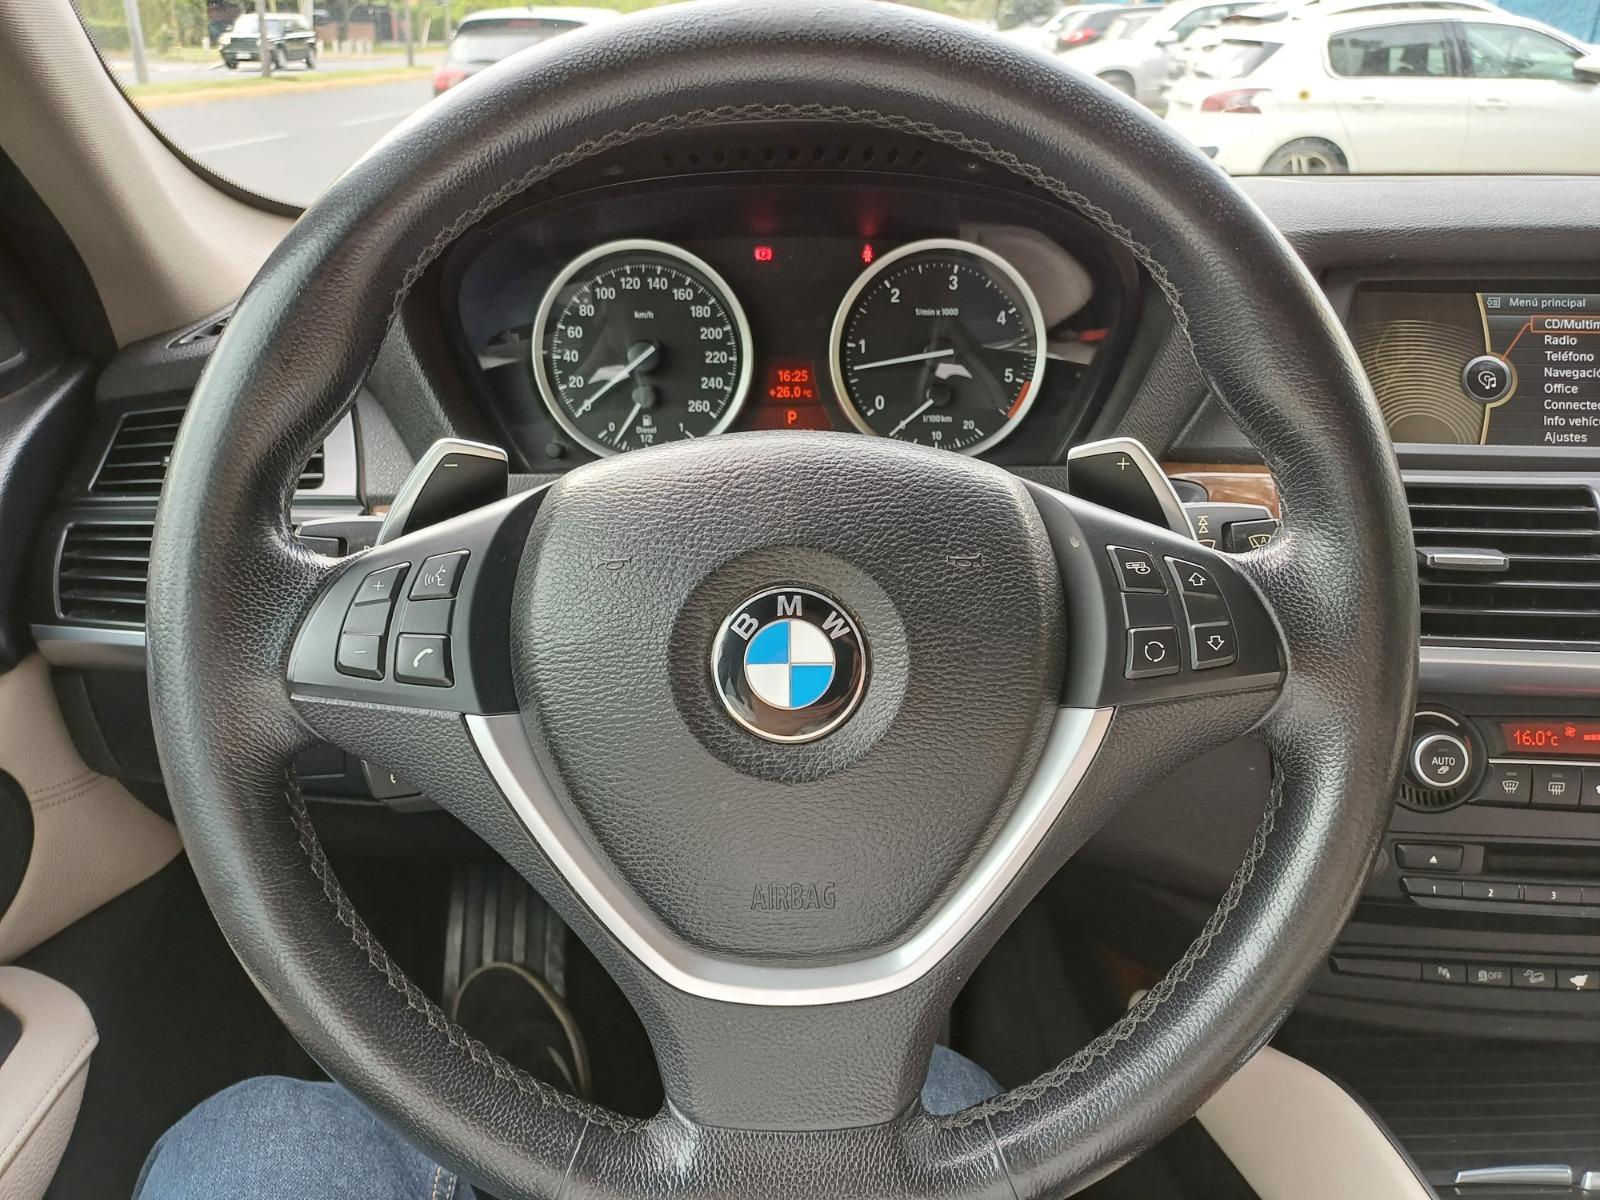 BMW X6 XDRIVE30D 3.0 AUT 2015 3.0 AUT DIESEL - FULL MOTOR